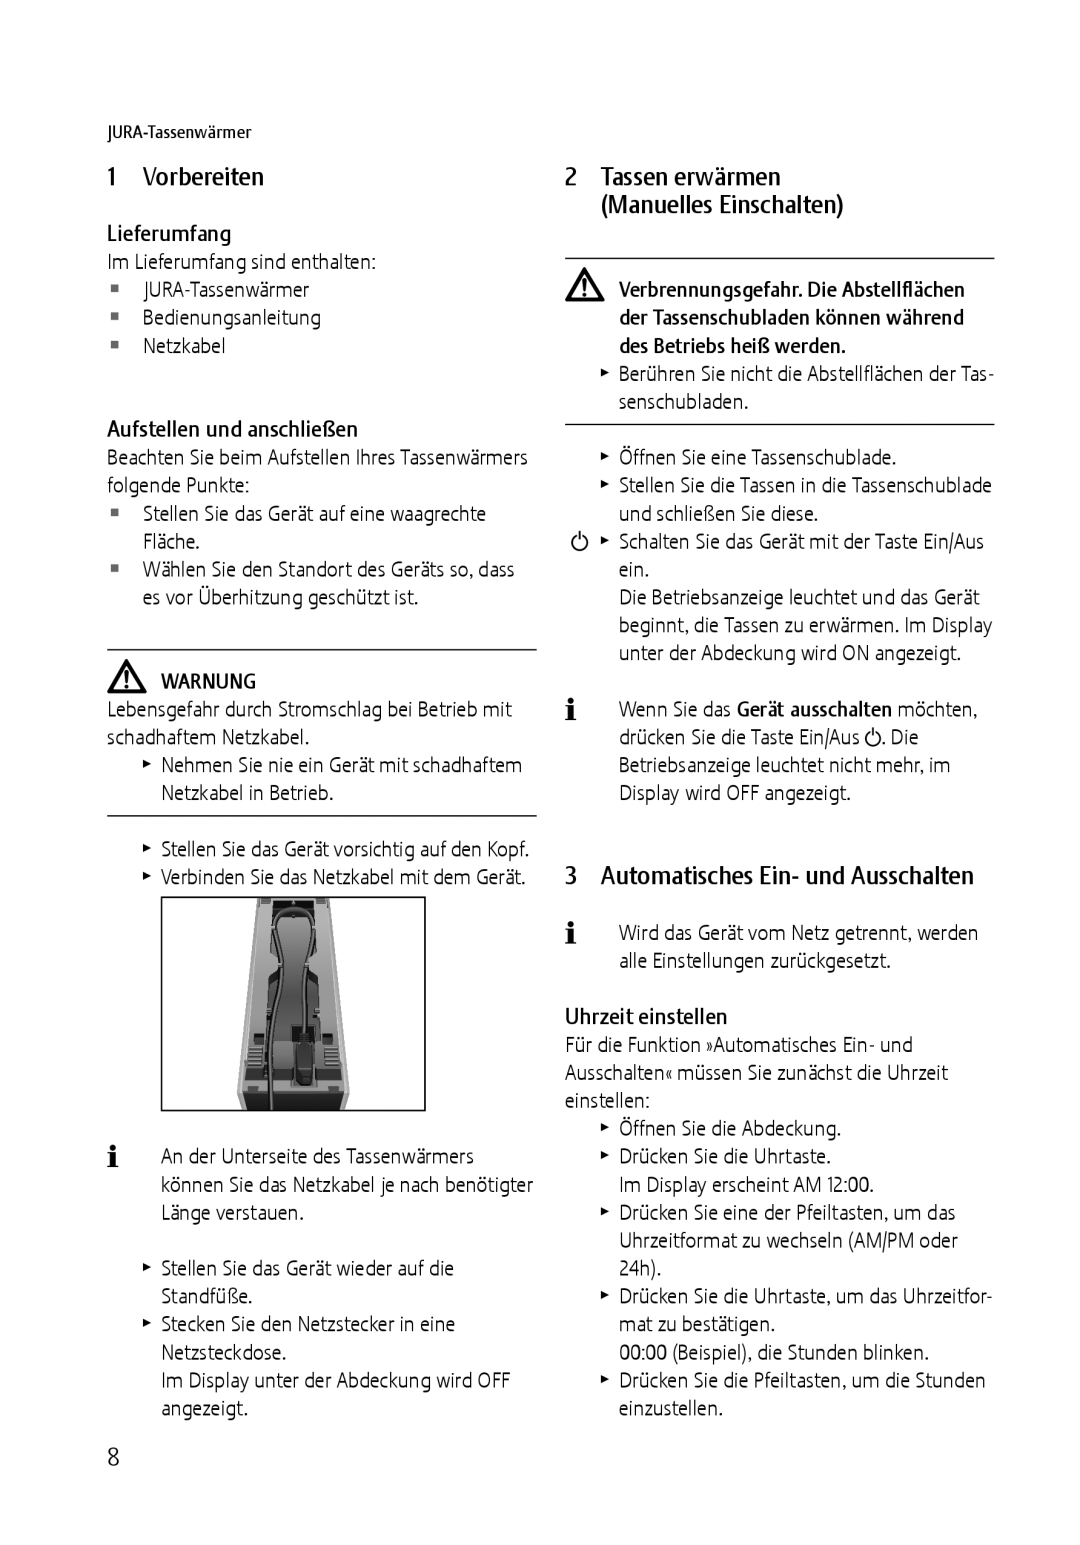 Jura Capresso 571 manual Vorbereiten, Automatisches Ein- und Ausschalten, Lieferumfang, Aufstellen und anschließen 